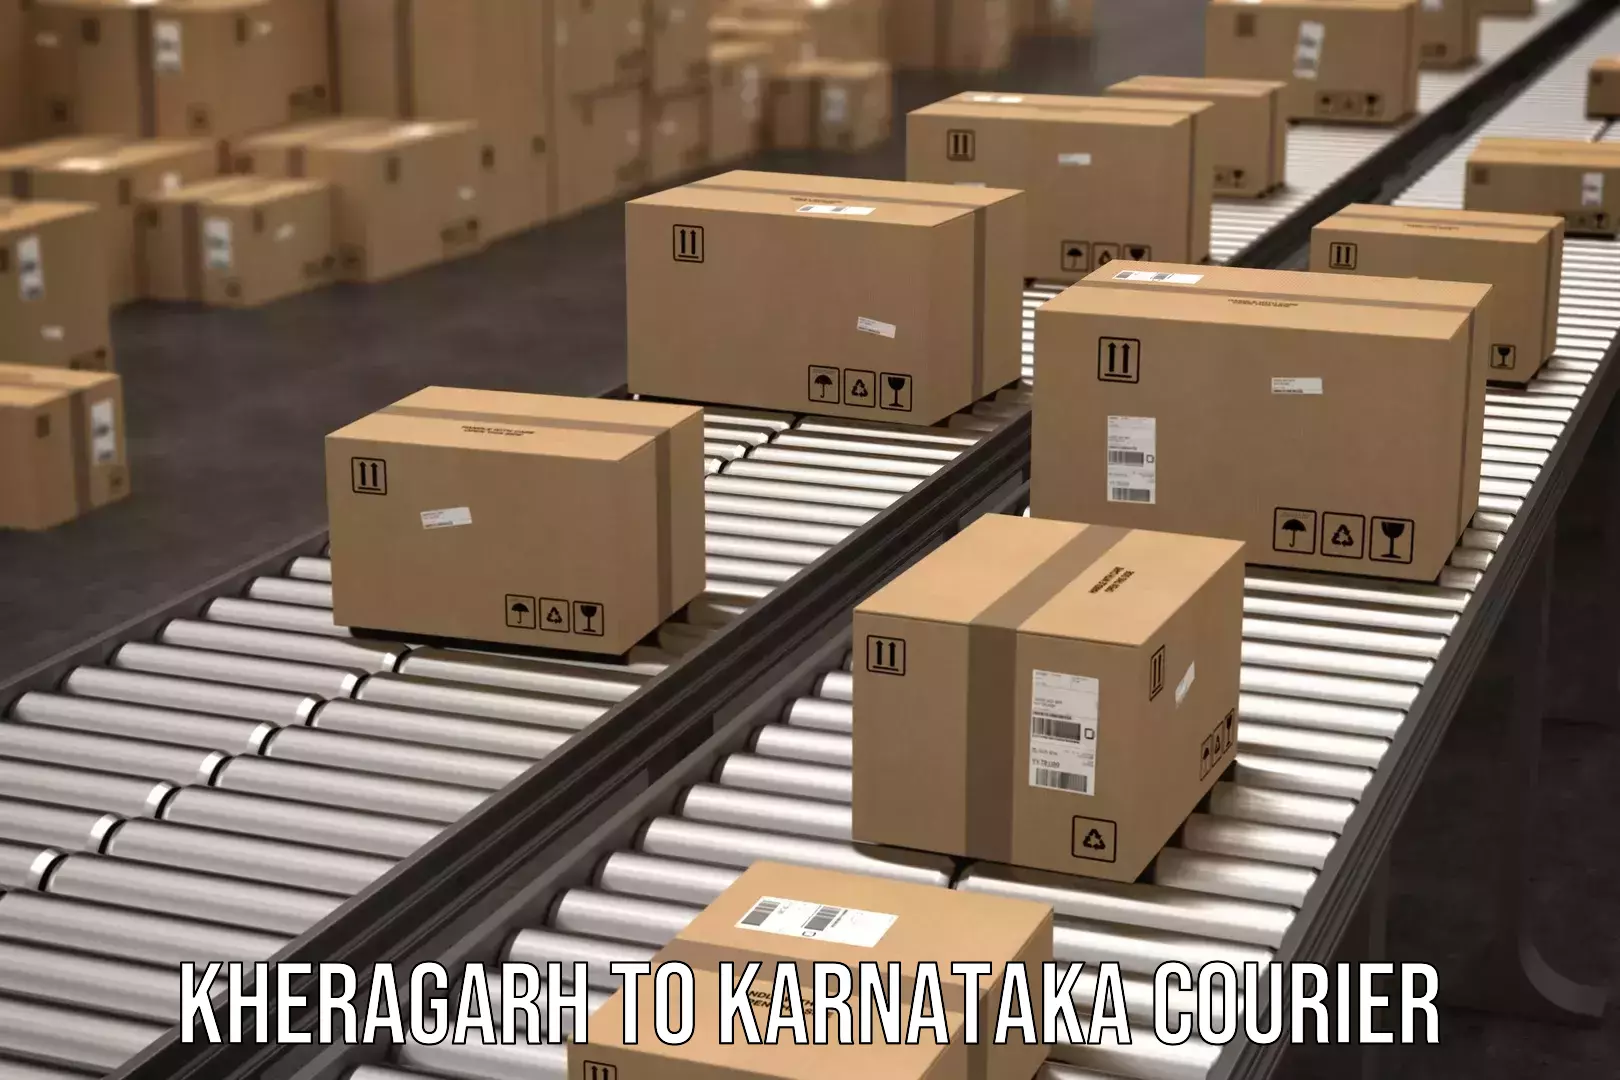 Cargo courier service Kheragarh to Sindagi